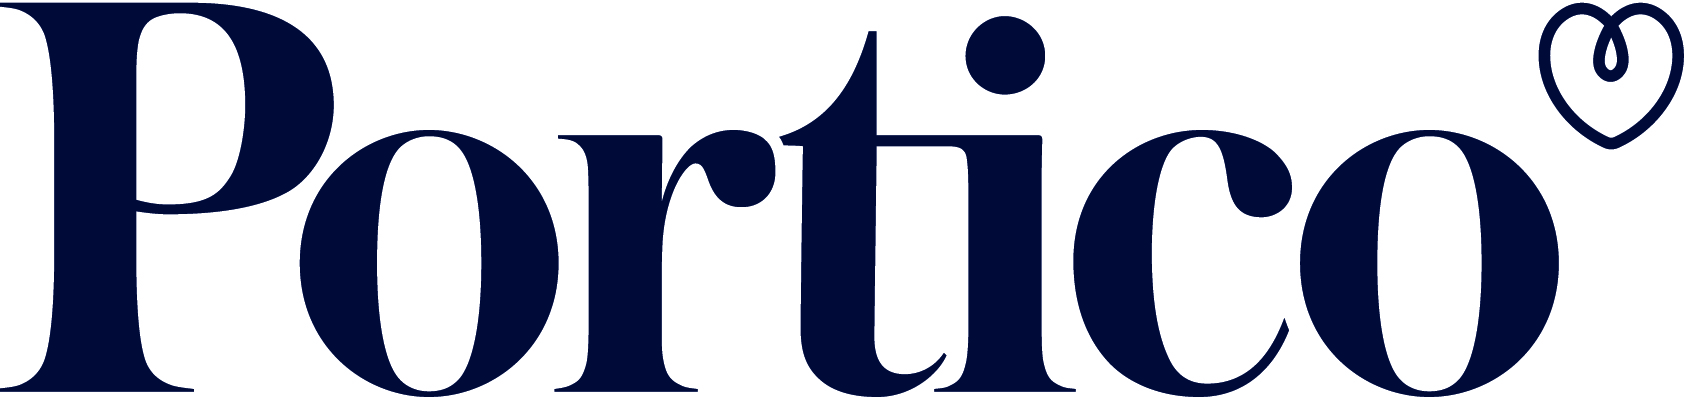 logo for Portico